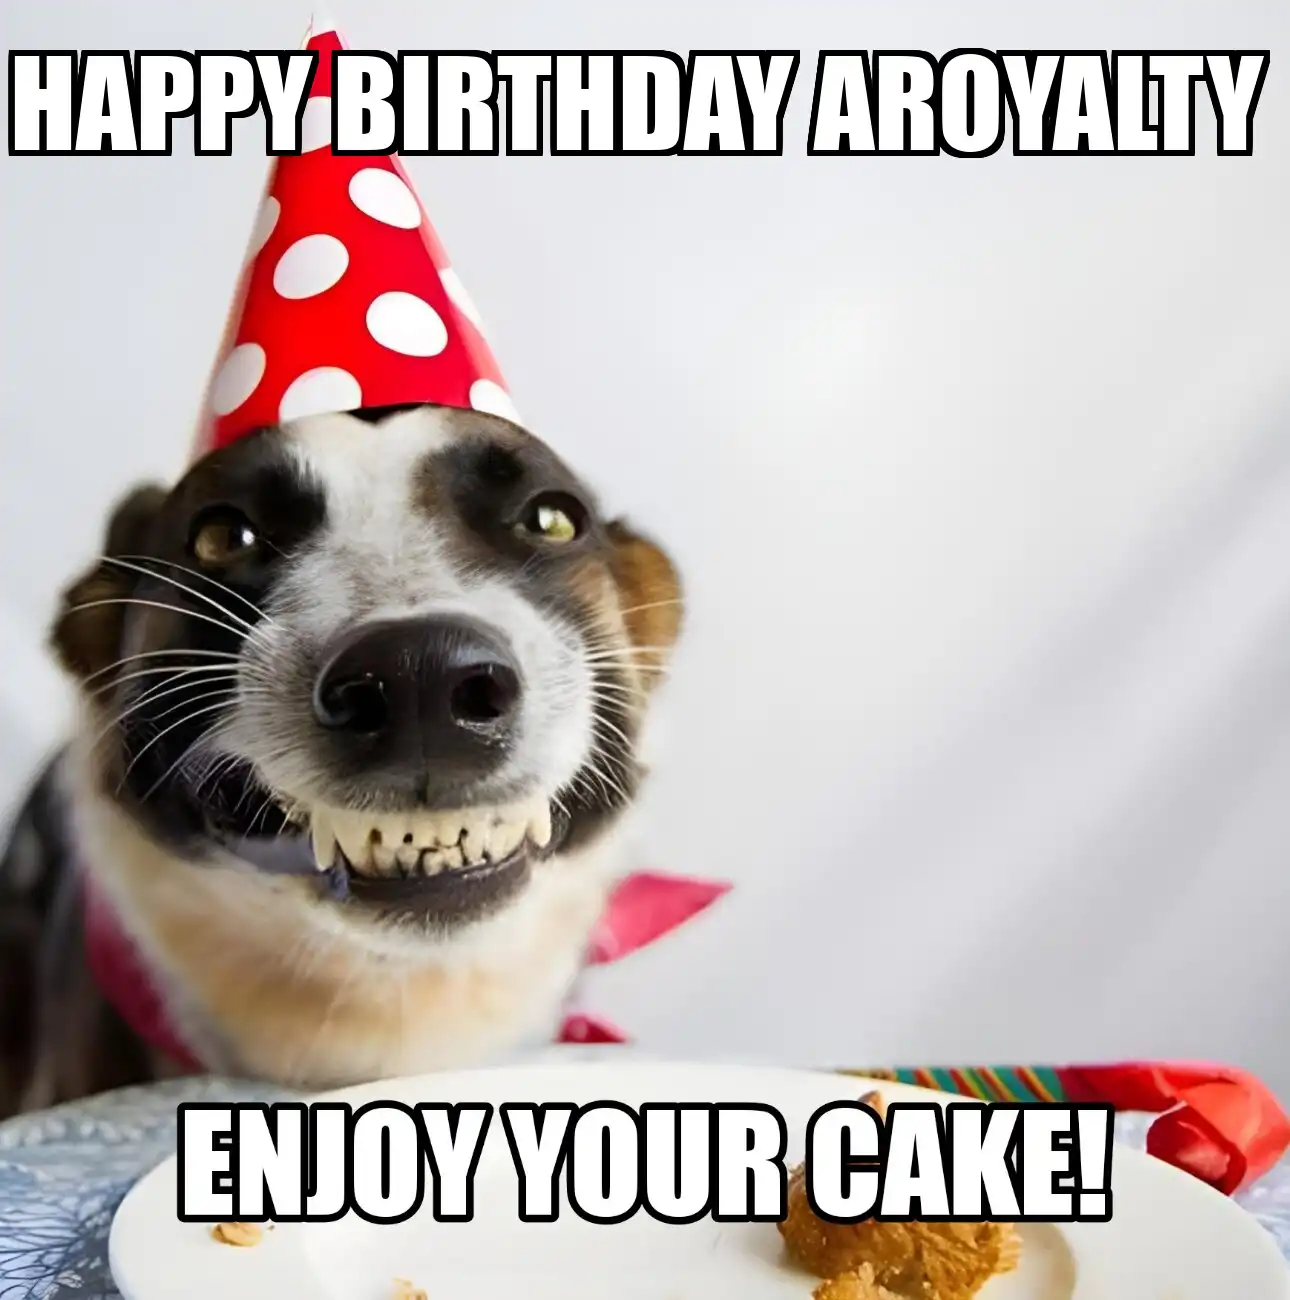 Happy Birthday Aroyalty Enjoy Your Cake Dog Meme